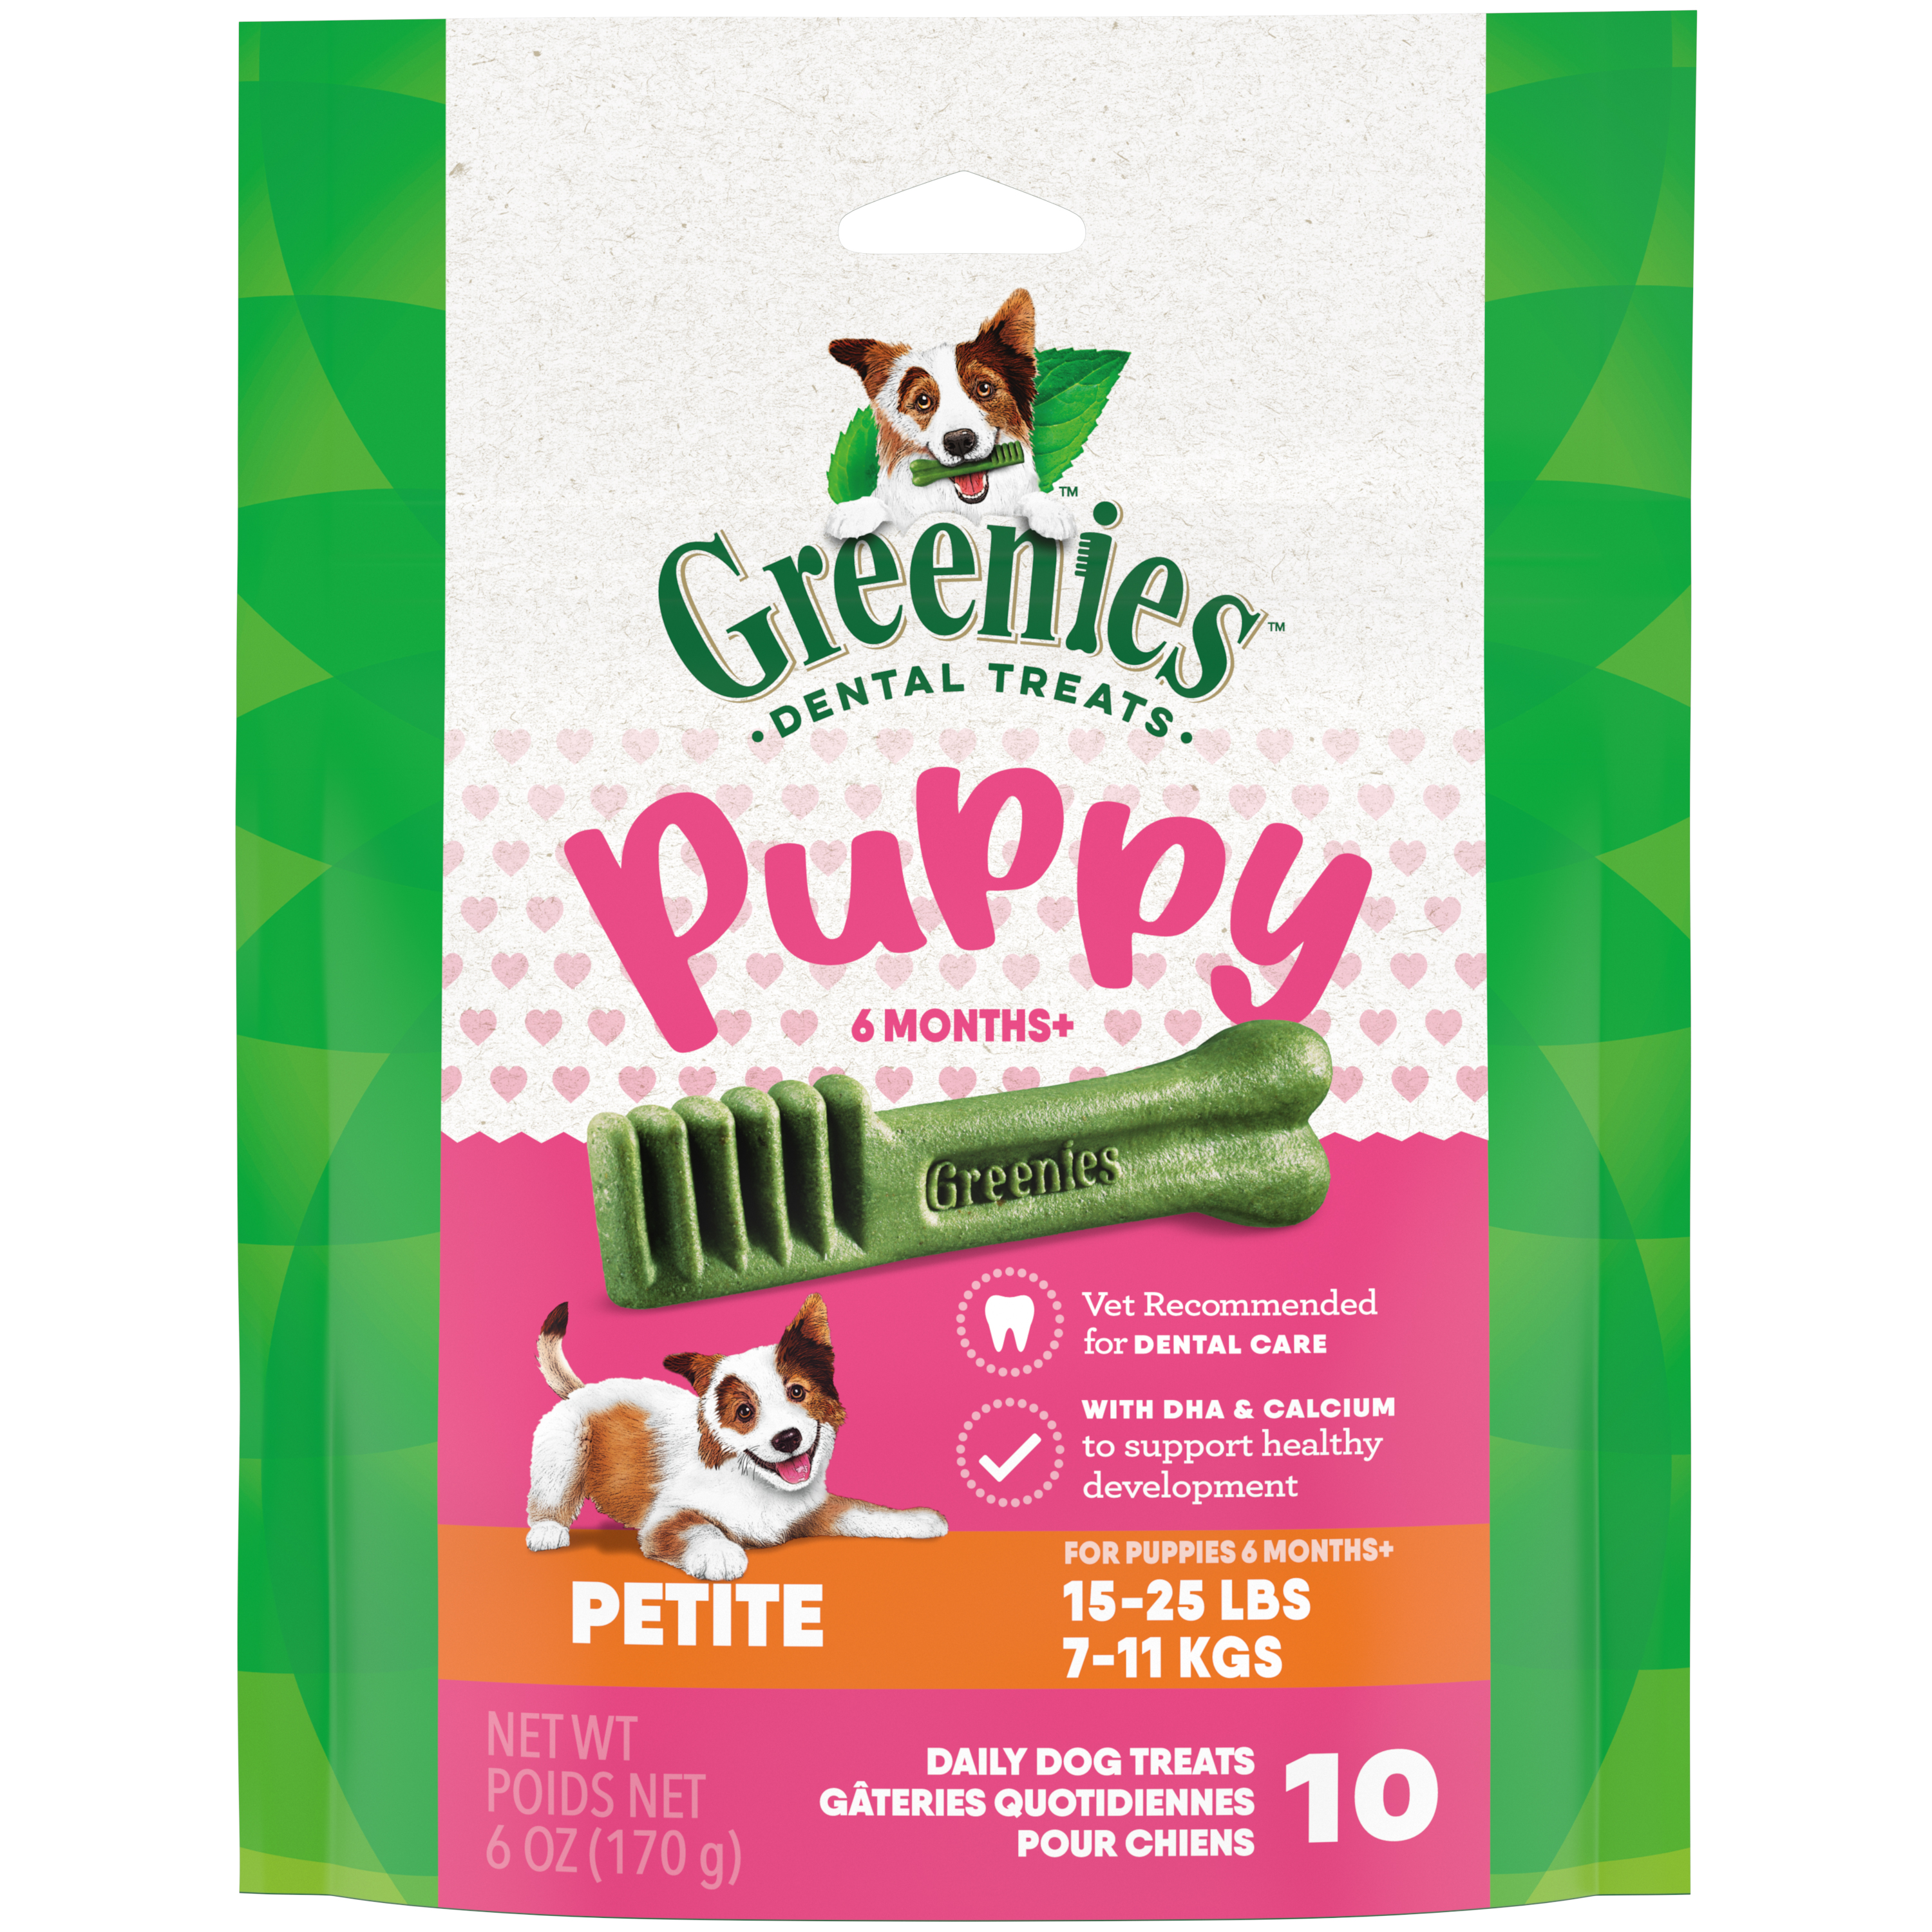 6oz Greenies PUPPY Petite Mini Treat Pack - Health/First Aid